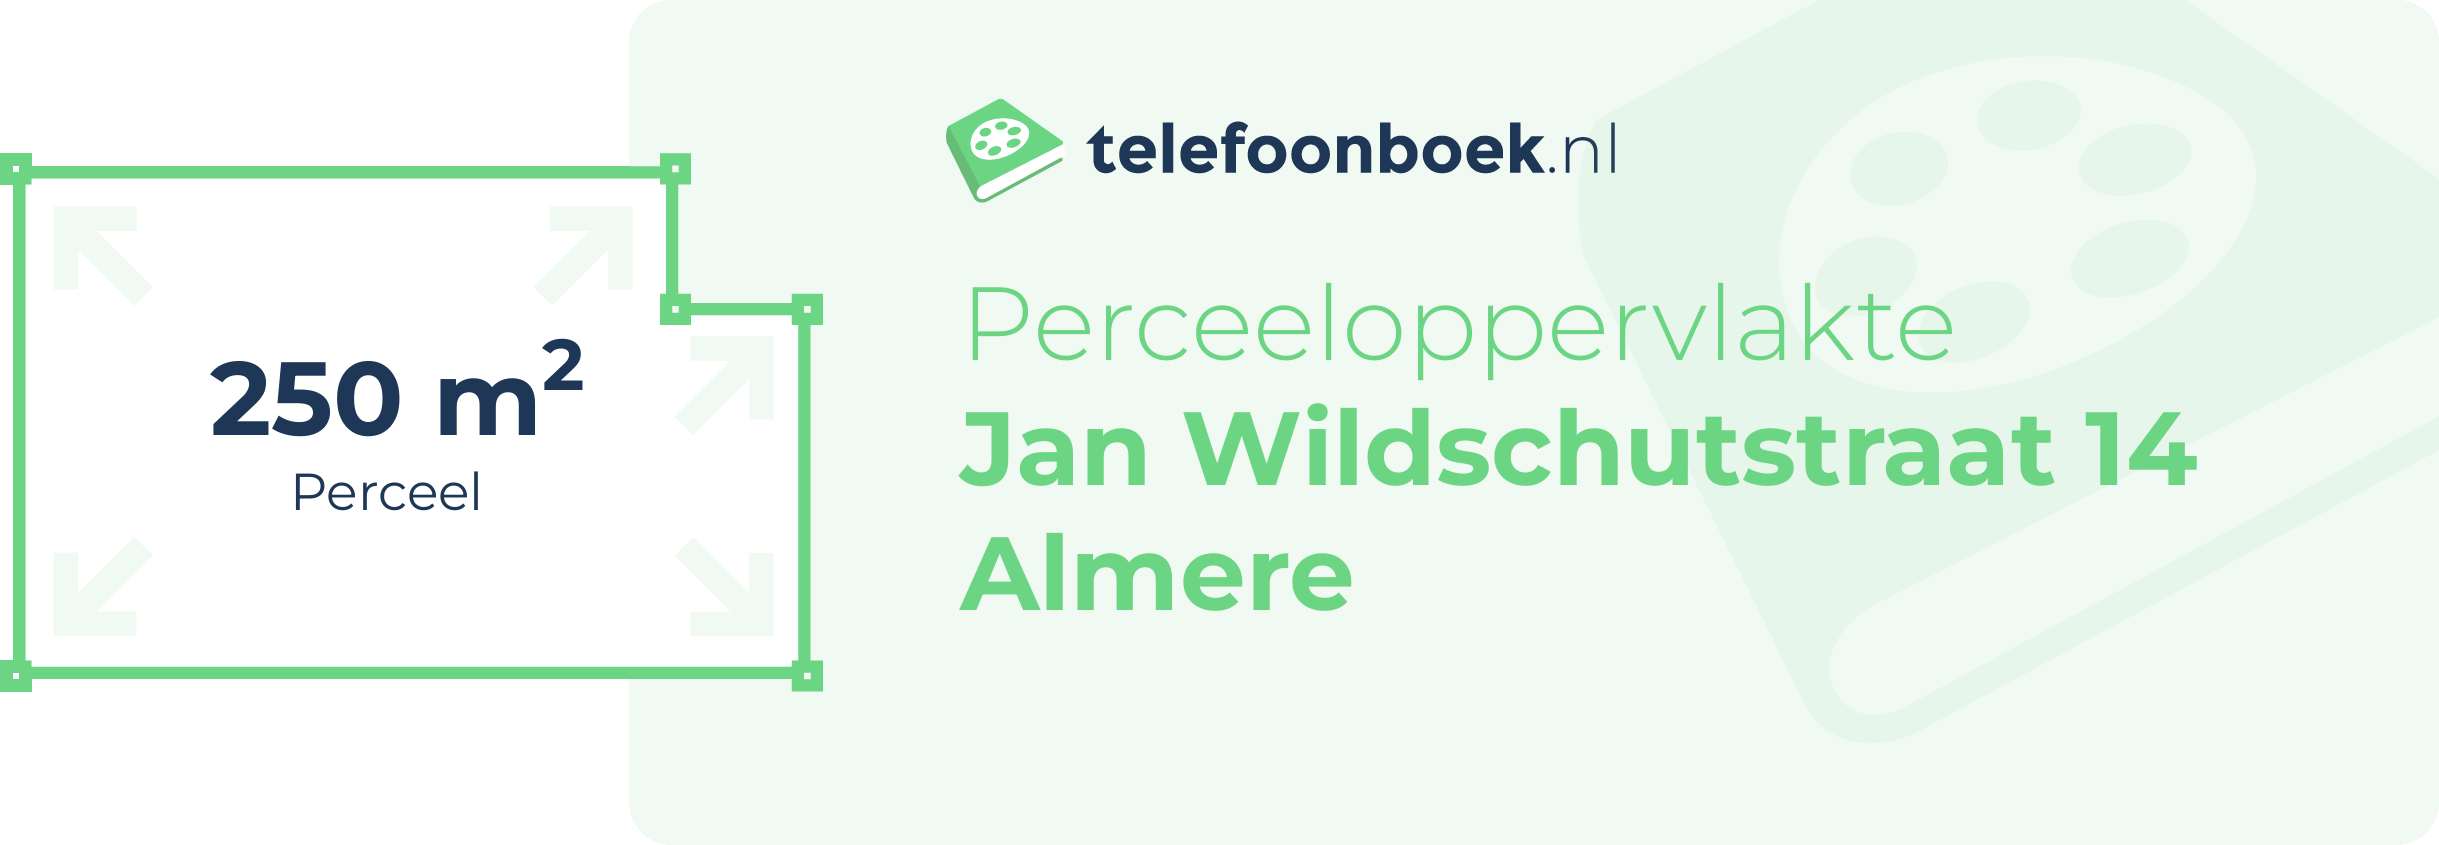 Perceeloppervlakte Jan Wildschutstraat 14 Almere